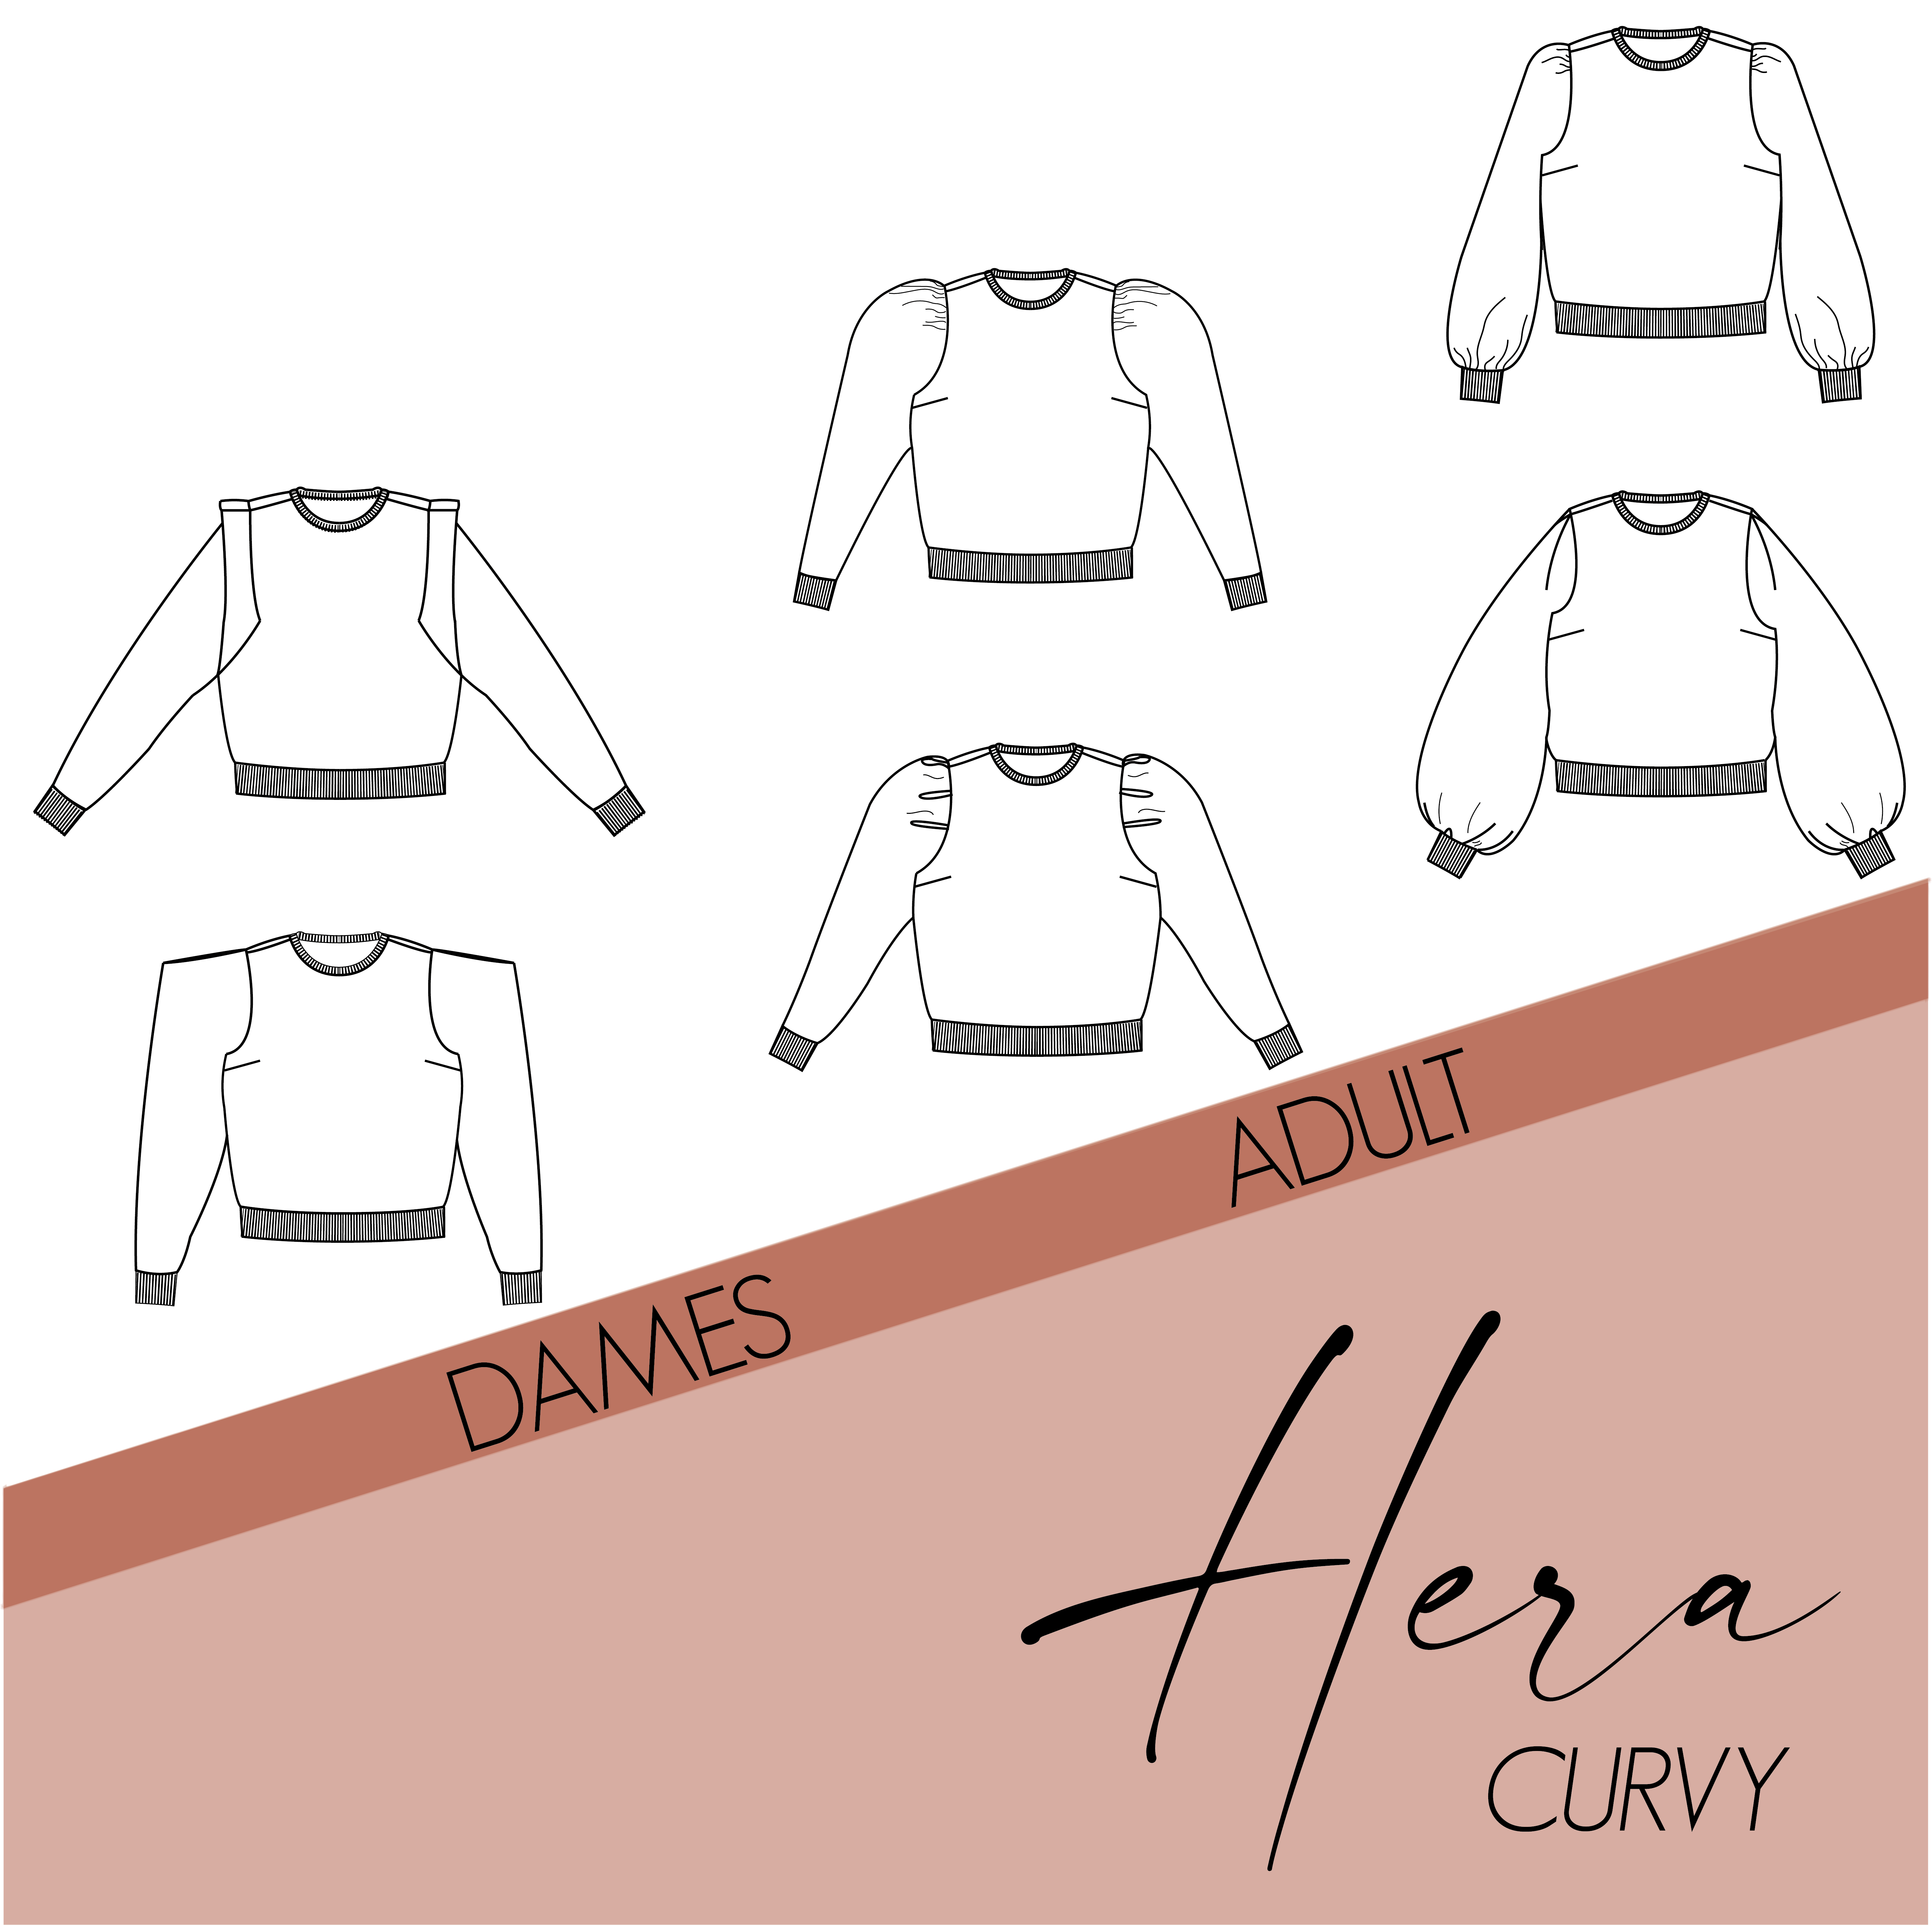 Hera curvy - dames & tieners